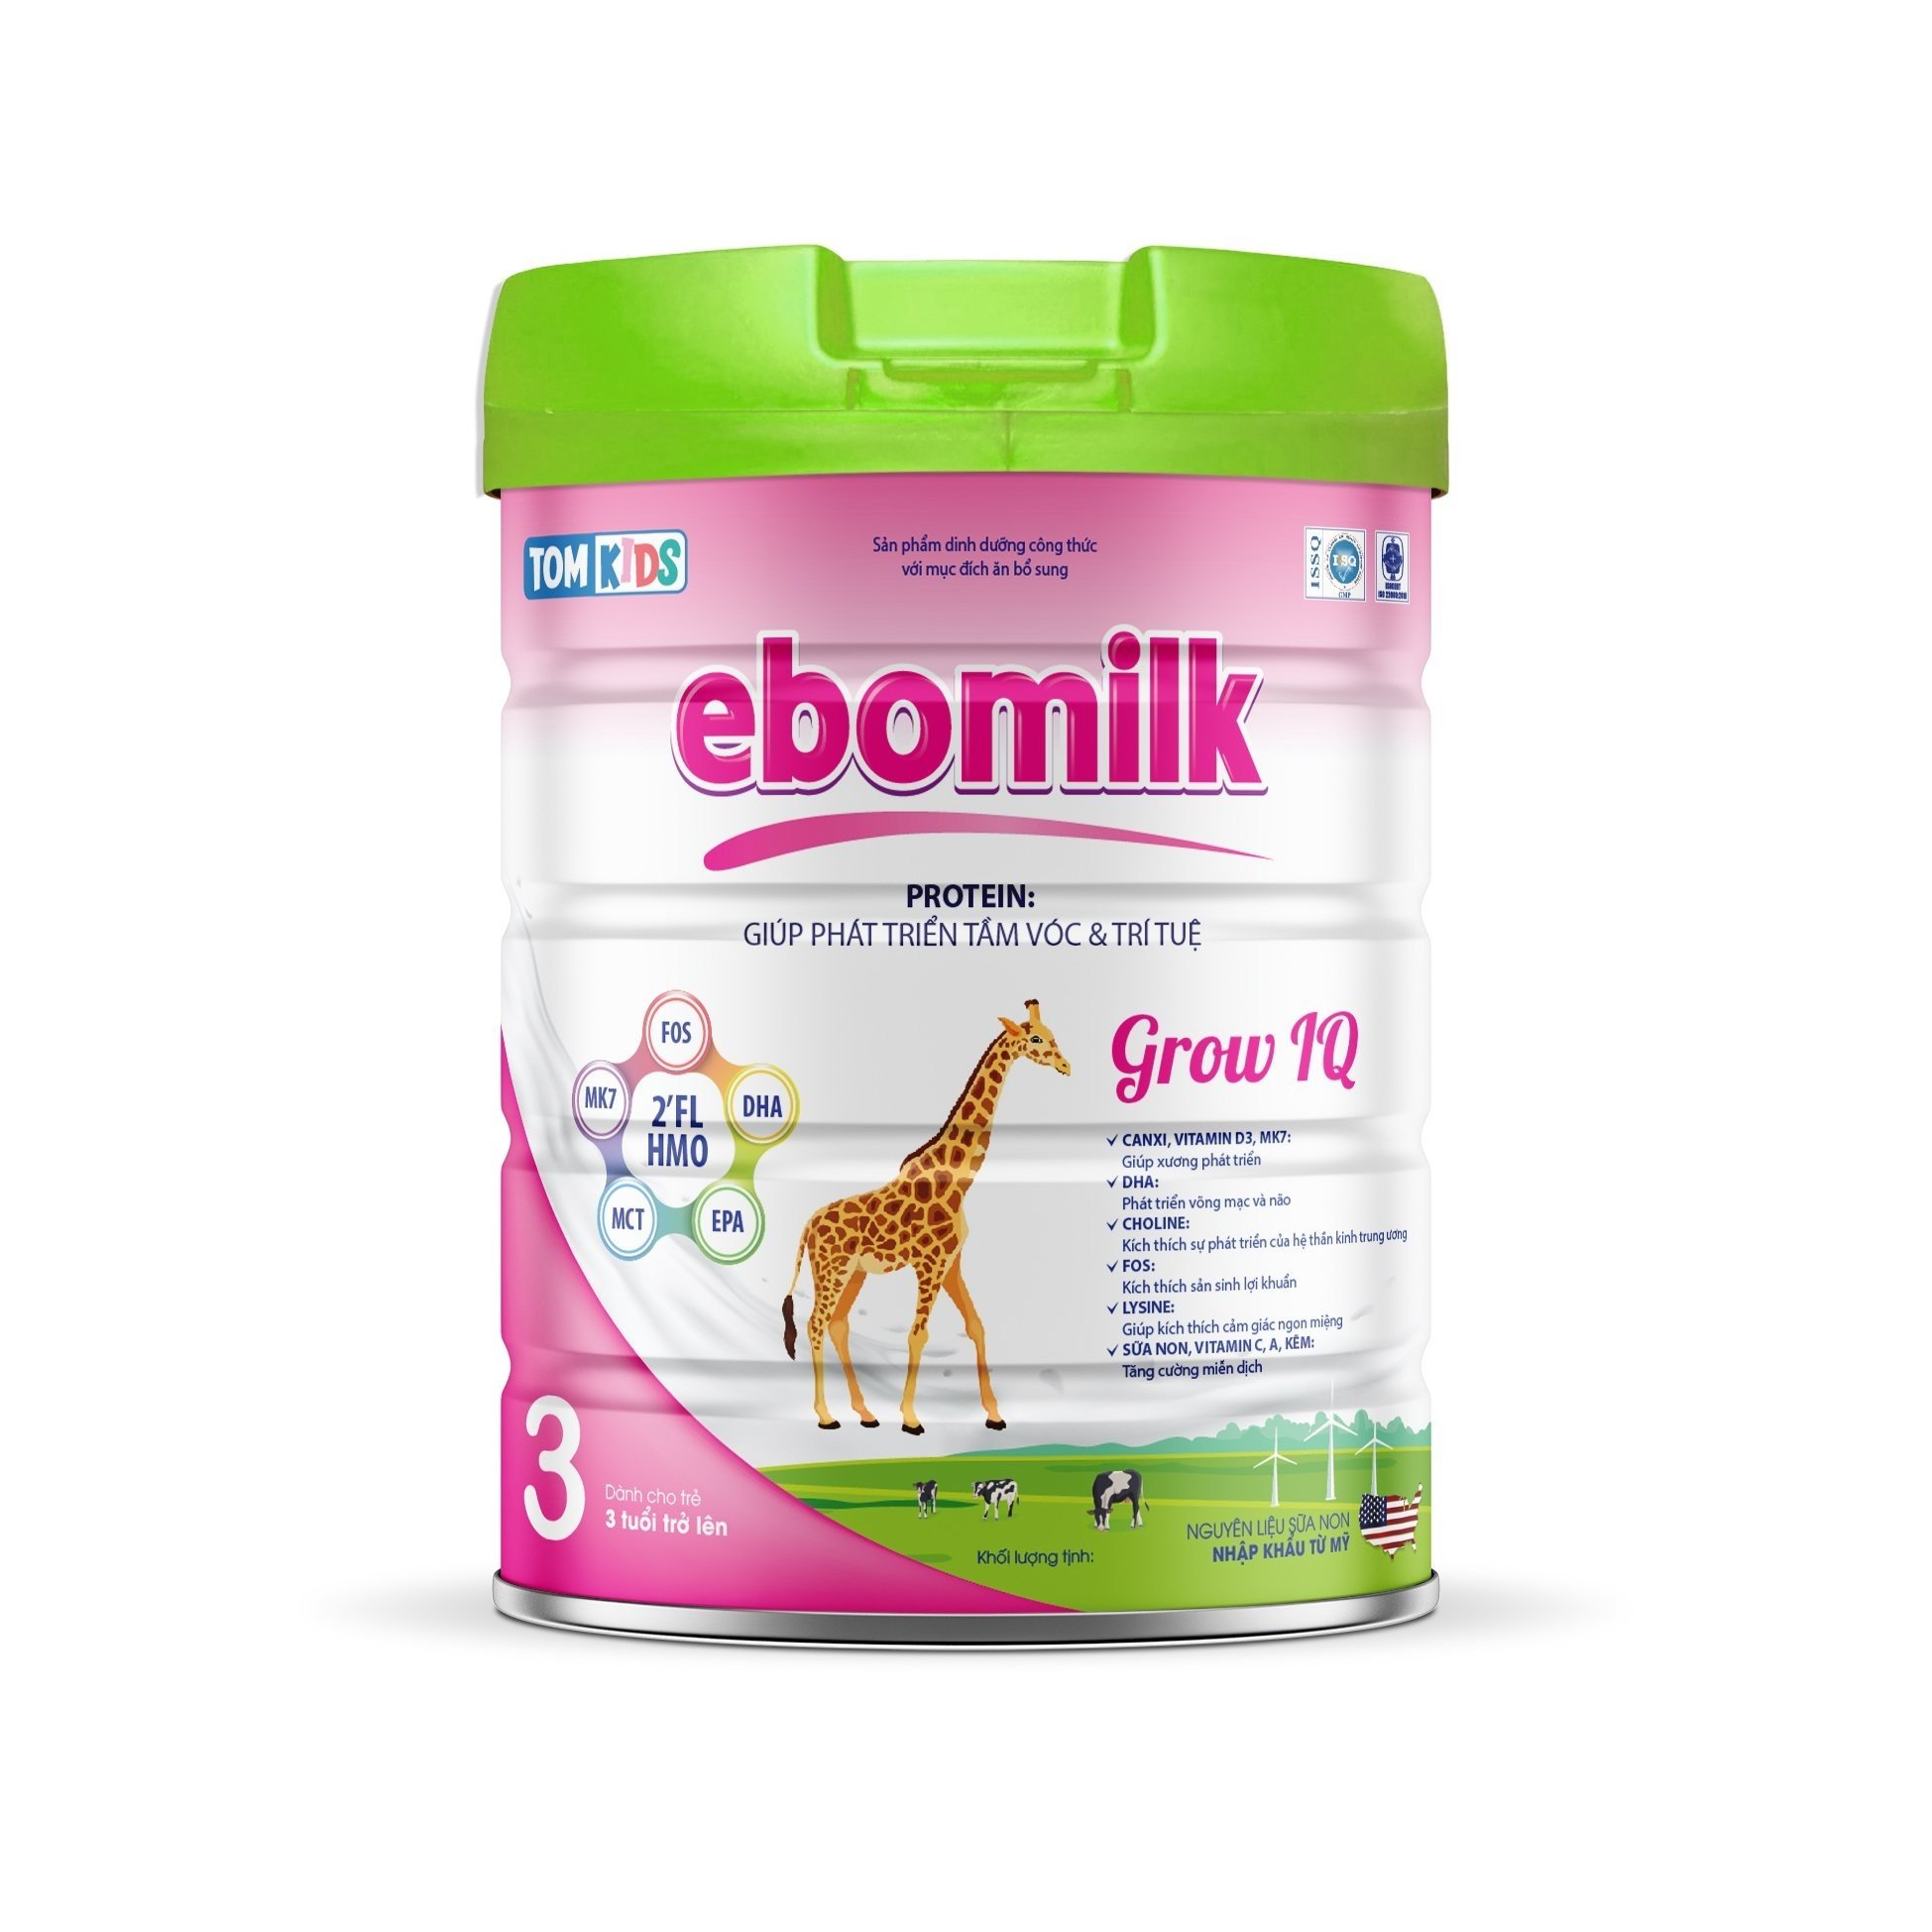 Sữa Ebomilk có an toàn và tốt như lời đồn hay không? - 5